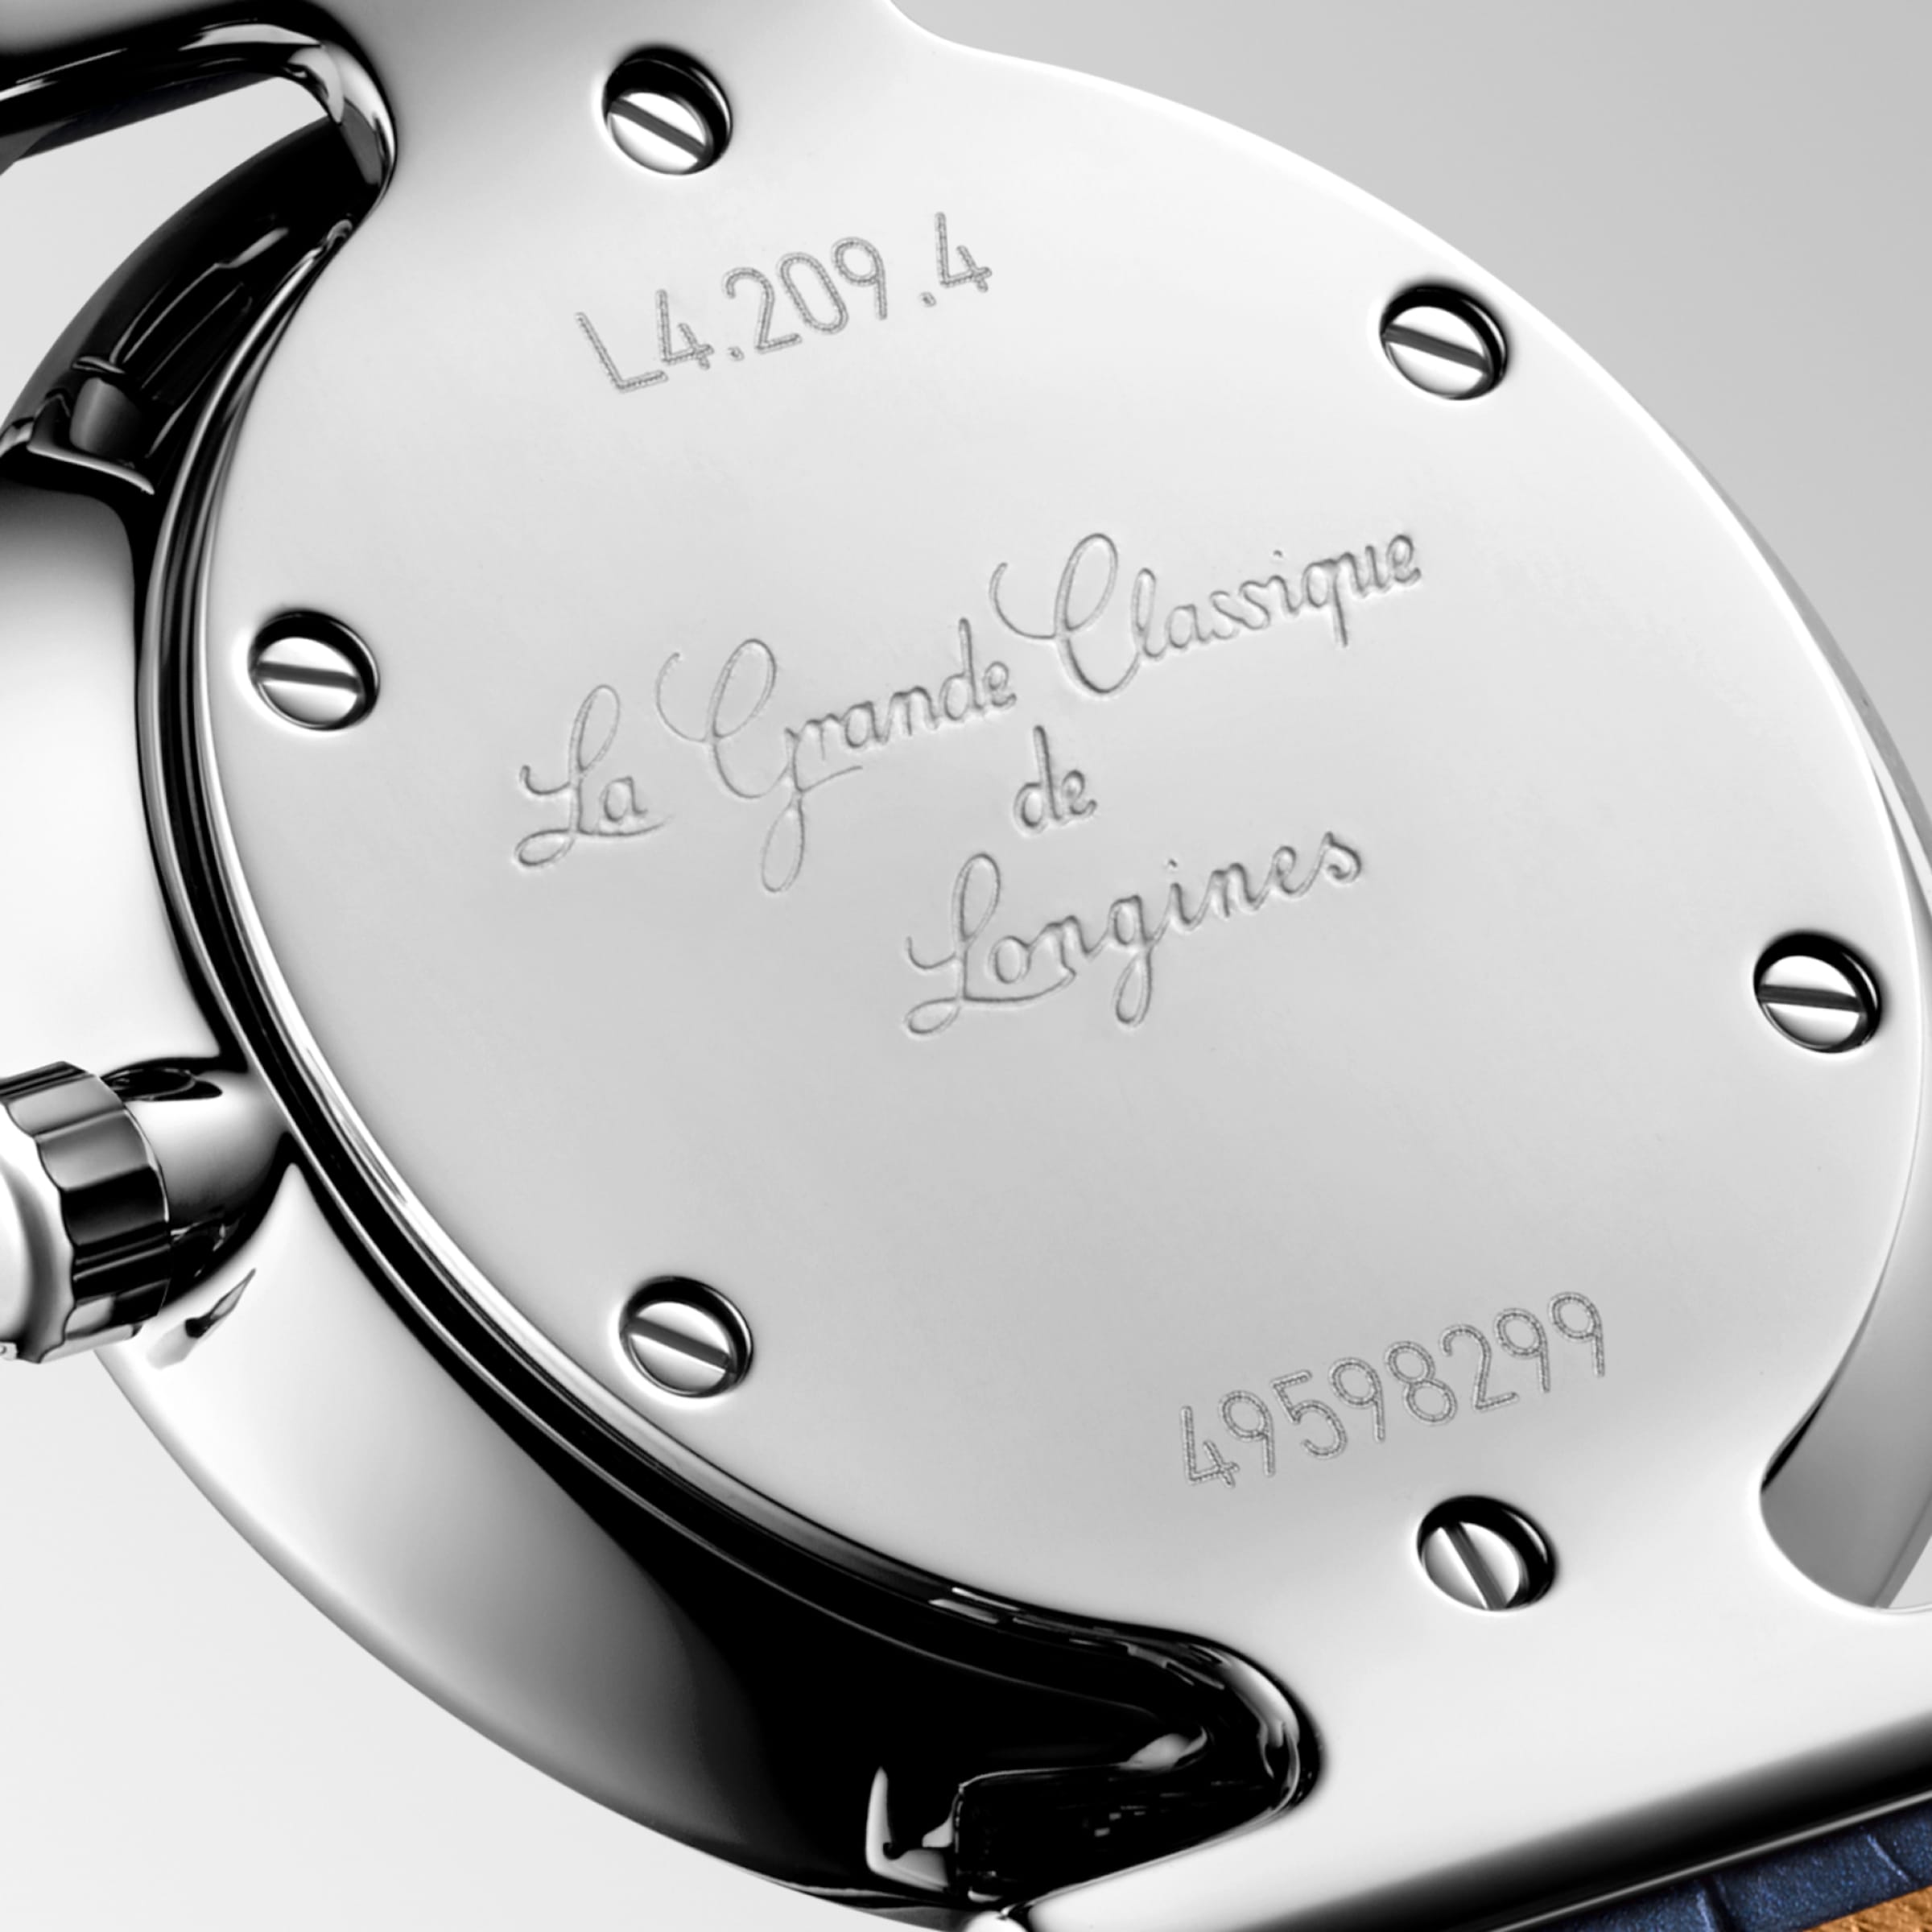 Longines LA GRANDE CLASSIQUE DE LONGINES Quartz Stainless steel Watch - L4.209.4.81.2